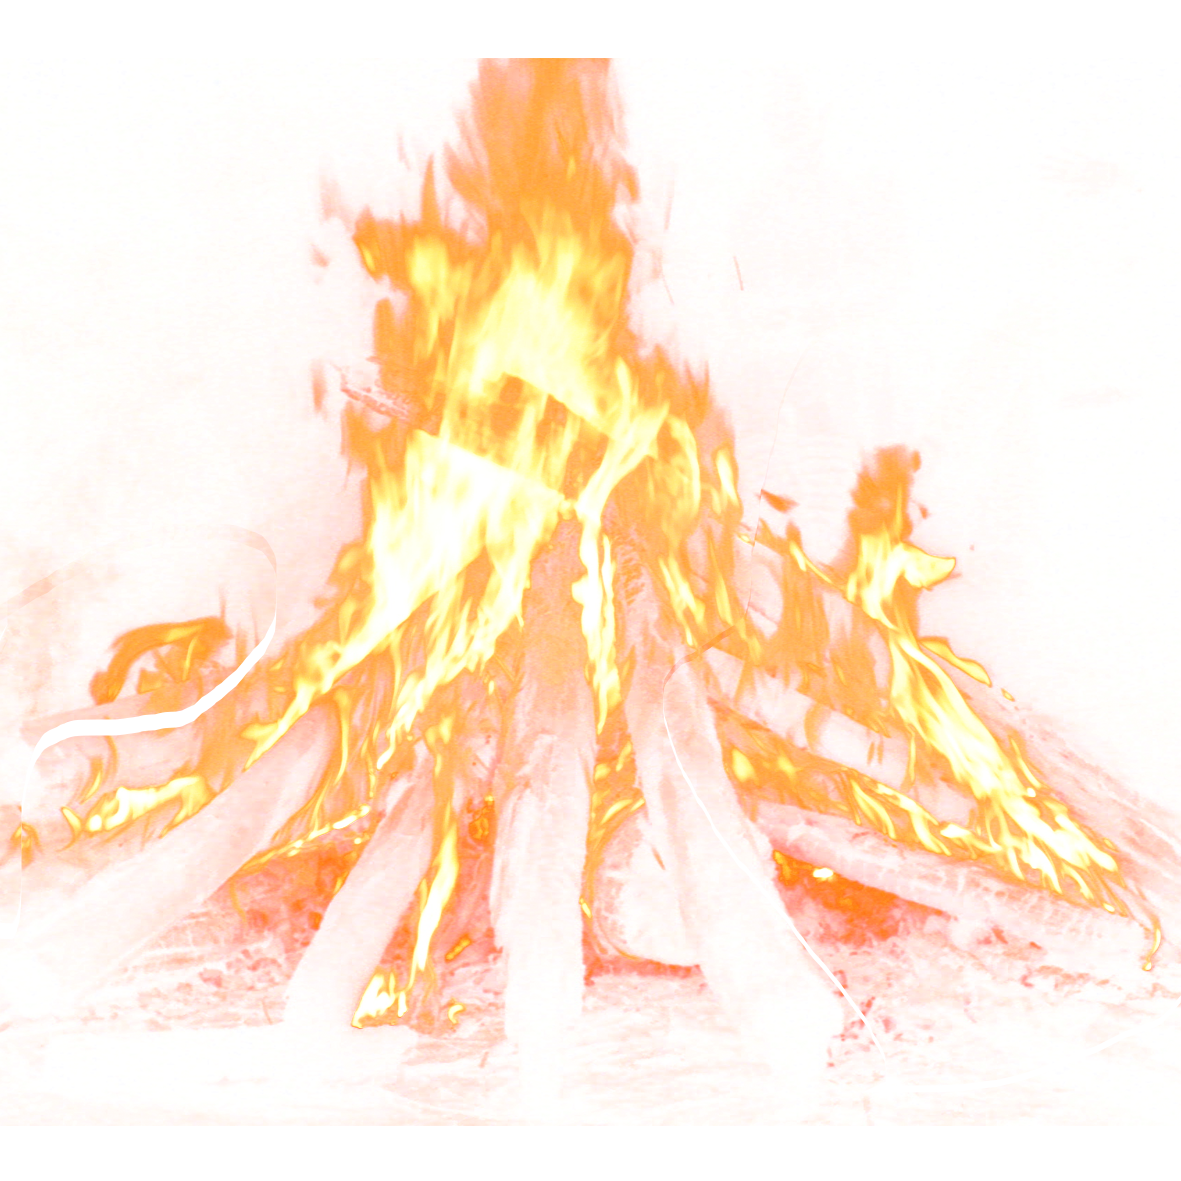 Bonfire PNG Image Background